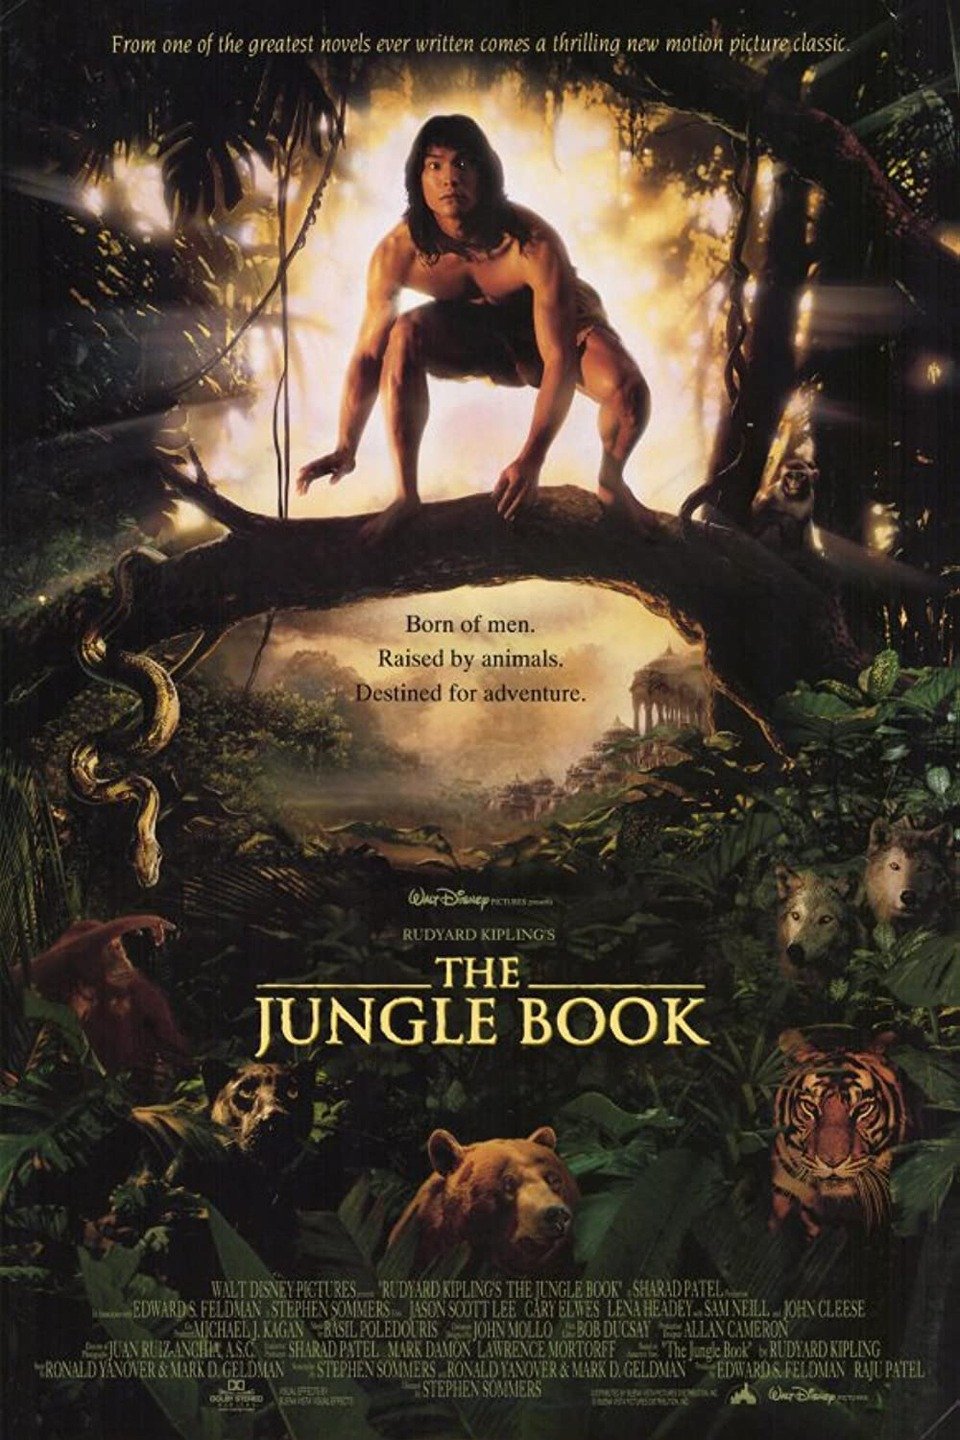 Rudyard Kiplings The Jungle Book